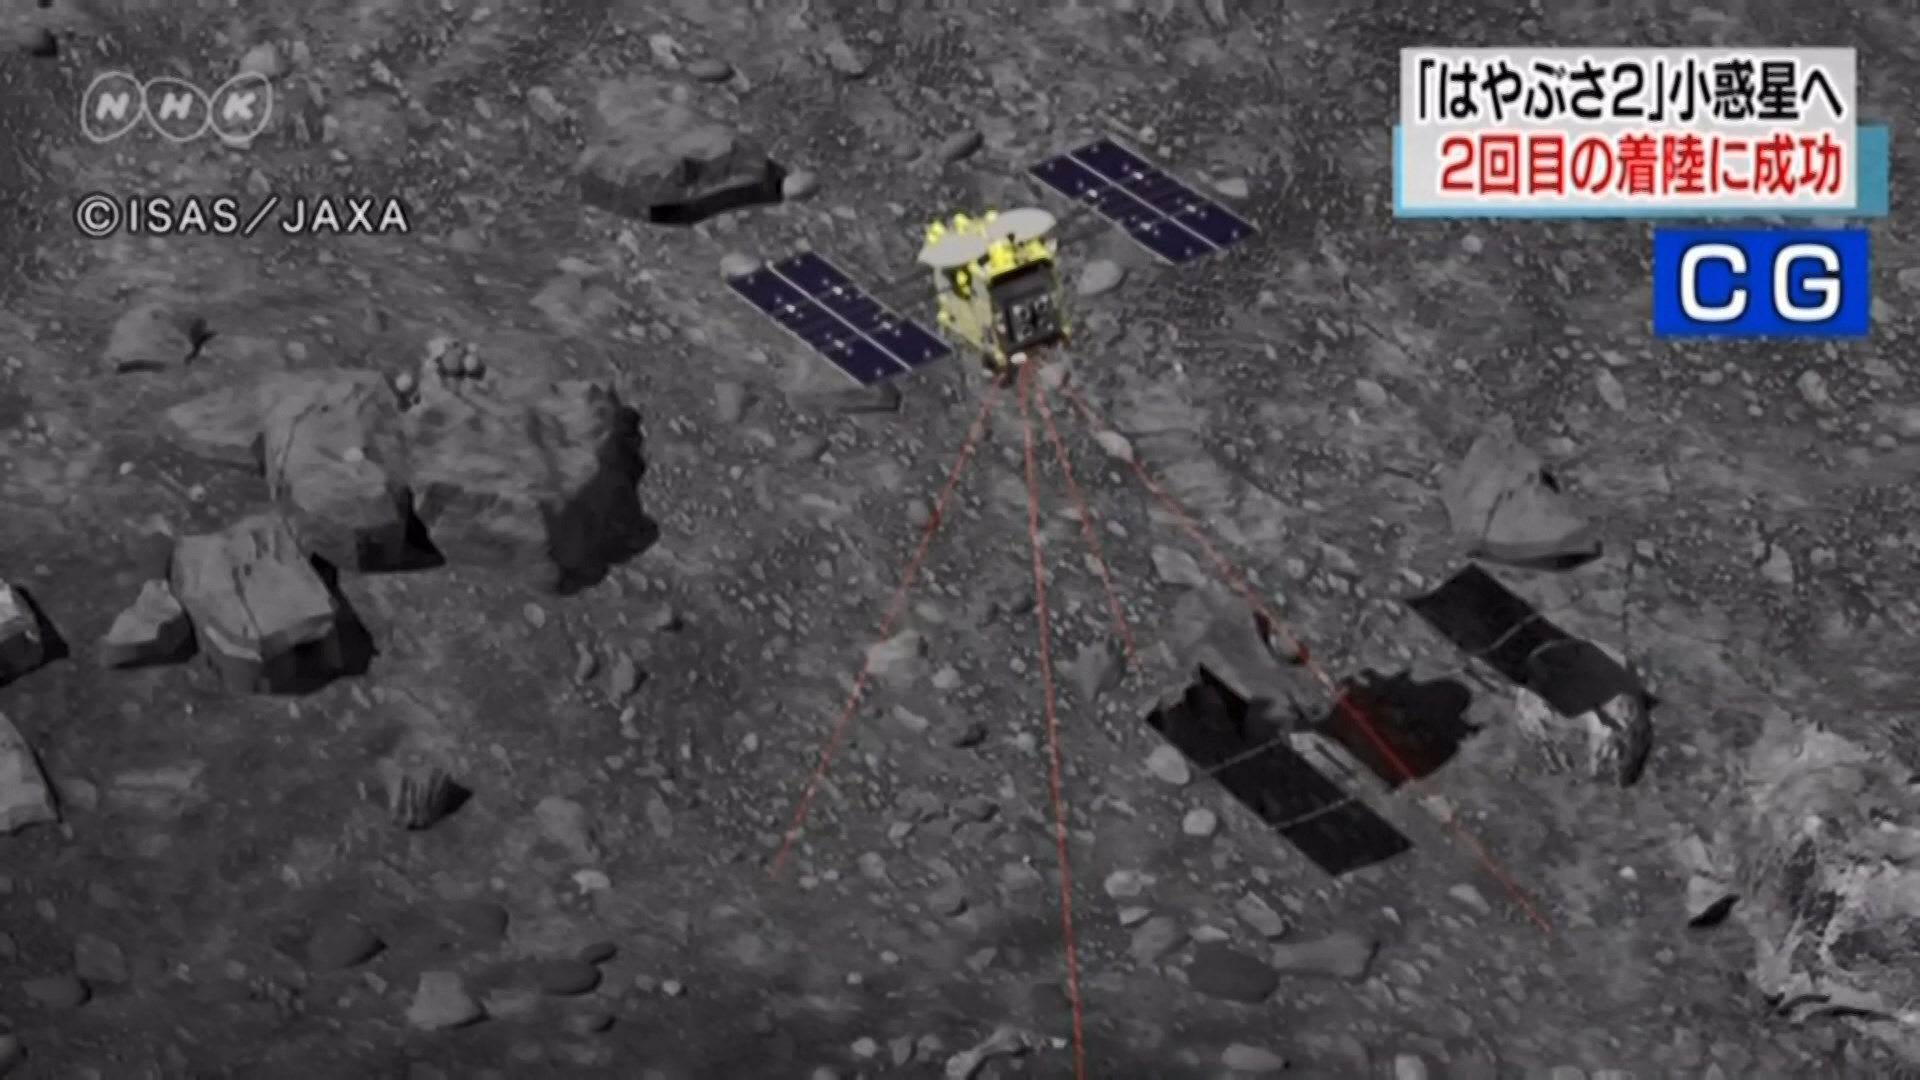 隼鳥二號首次採集小行星地下岩石碎片